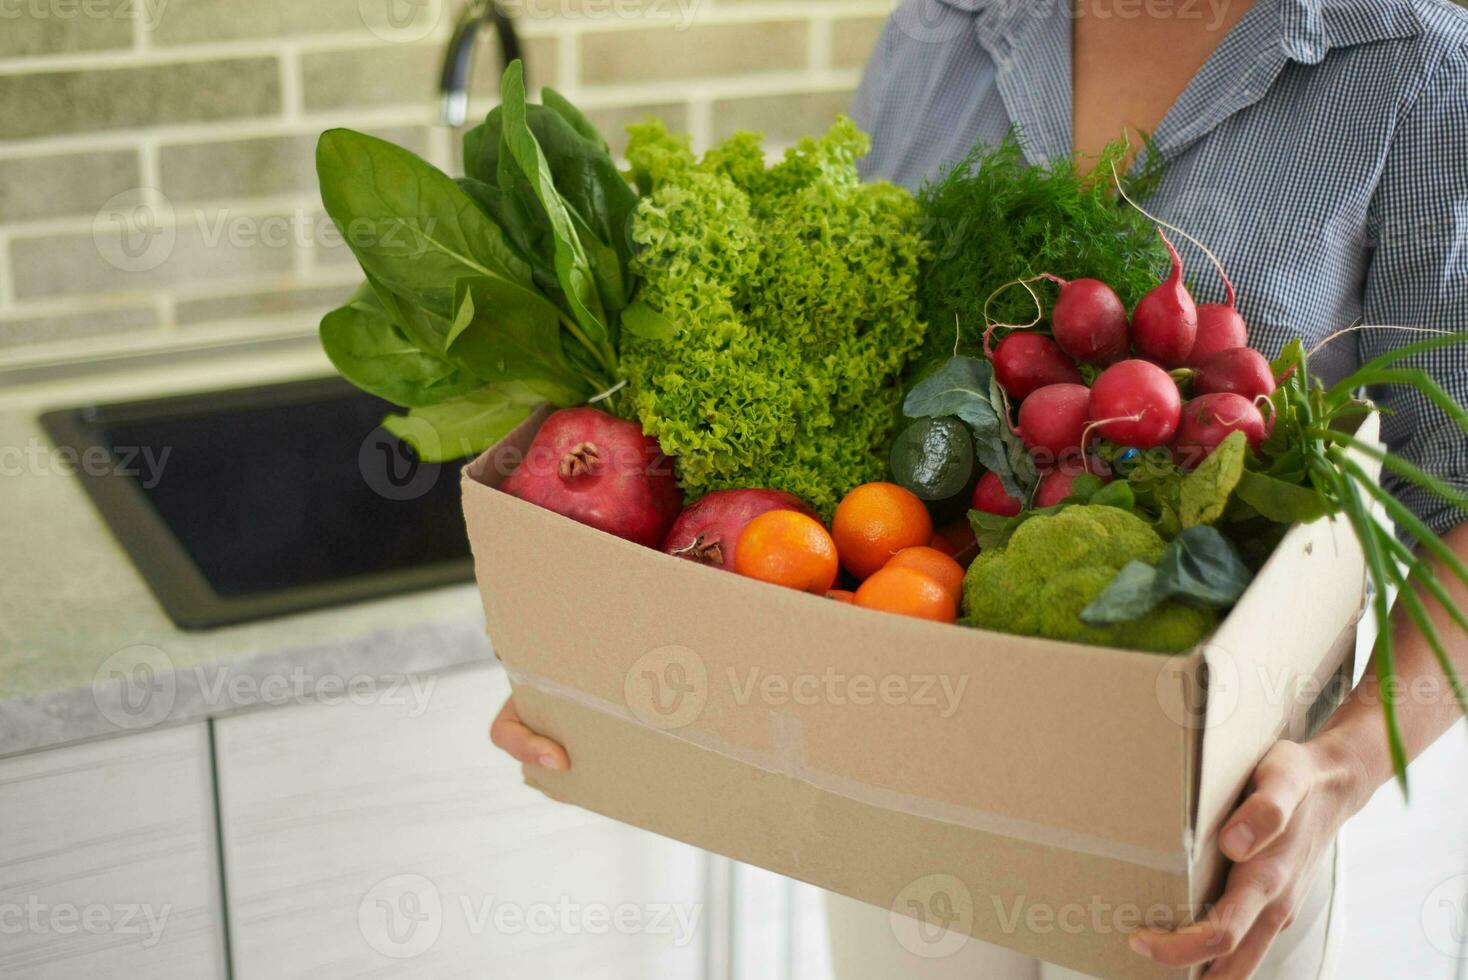 avvicinamento di un' cartone scatola pieno di fresco biologico la verdura, frutta e verdura nel femmina mani foto